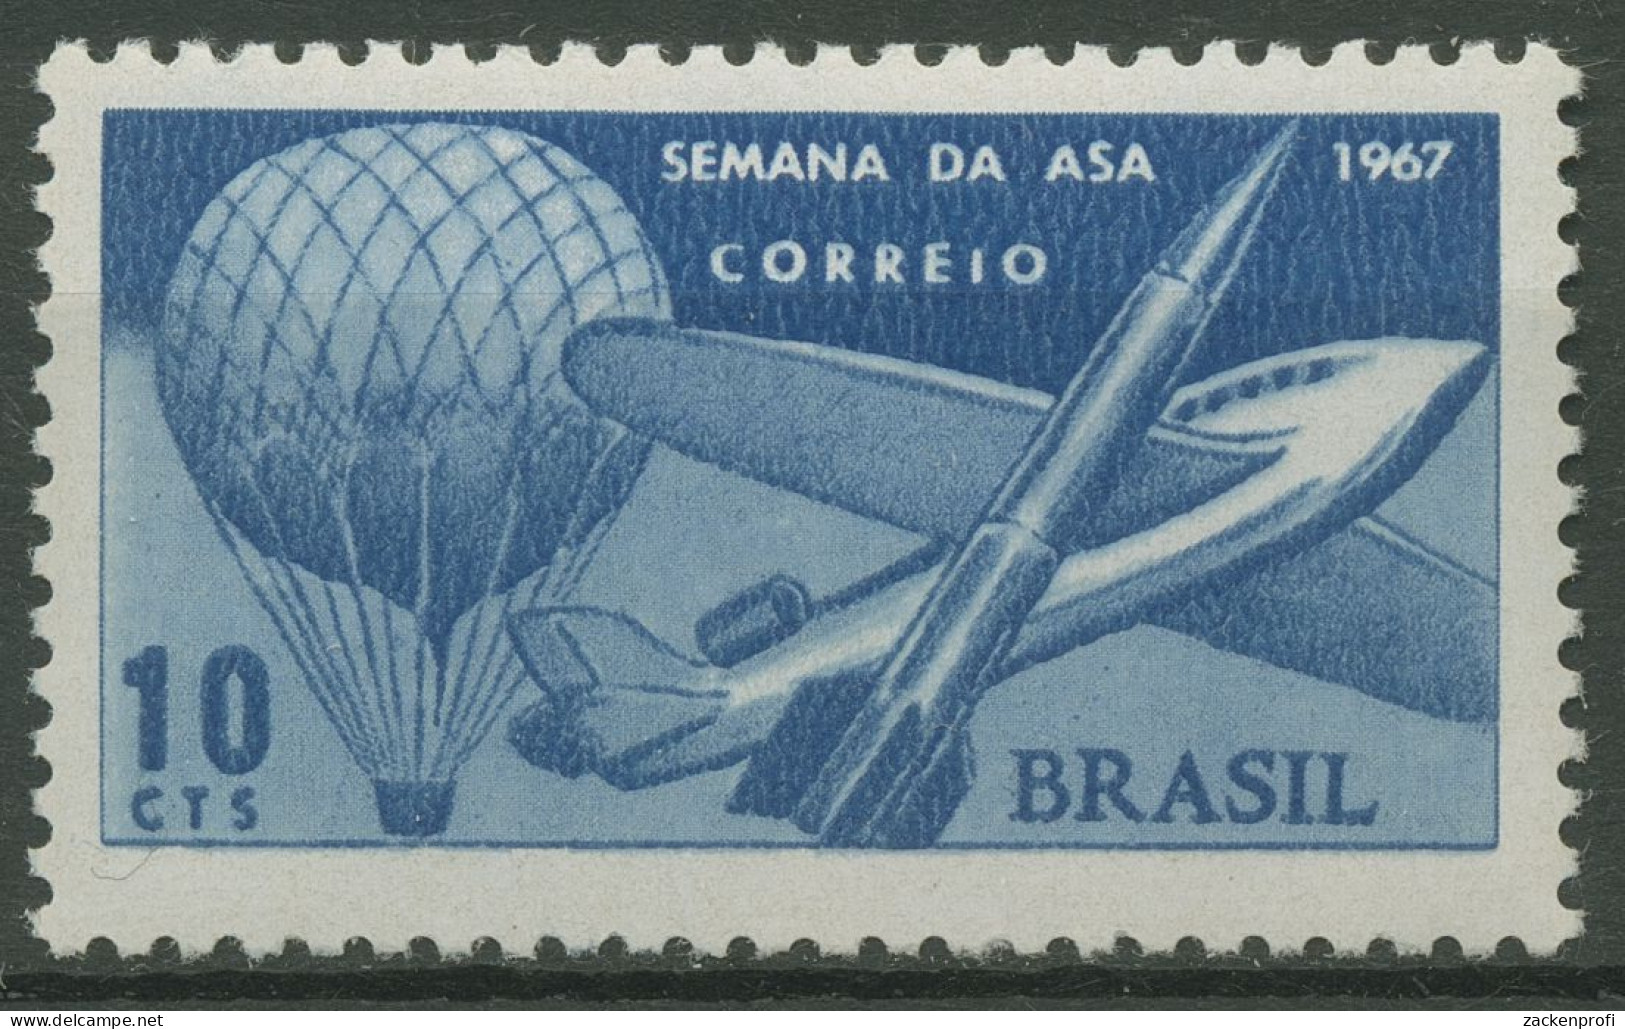 Brasilien 1967 Flugwoche Ballon Flugzeug Rakete 1151 Postfrisch - Neufs